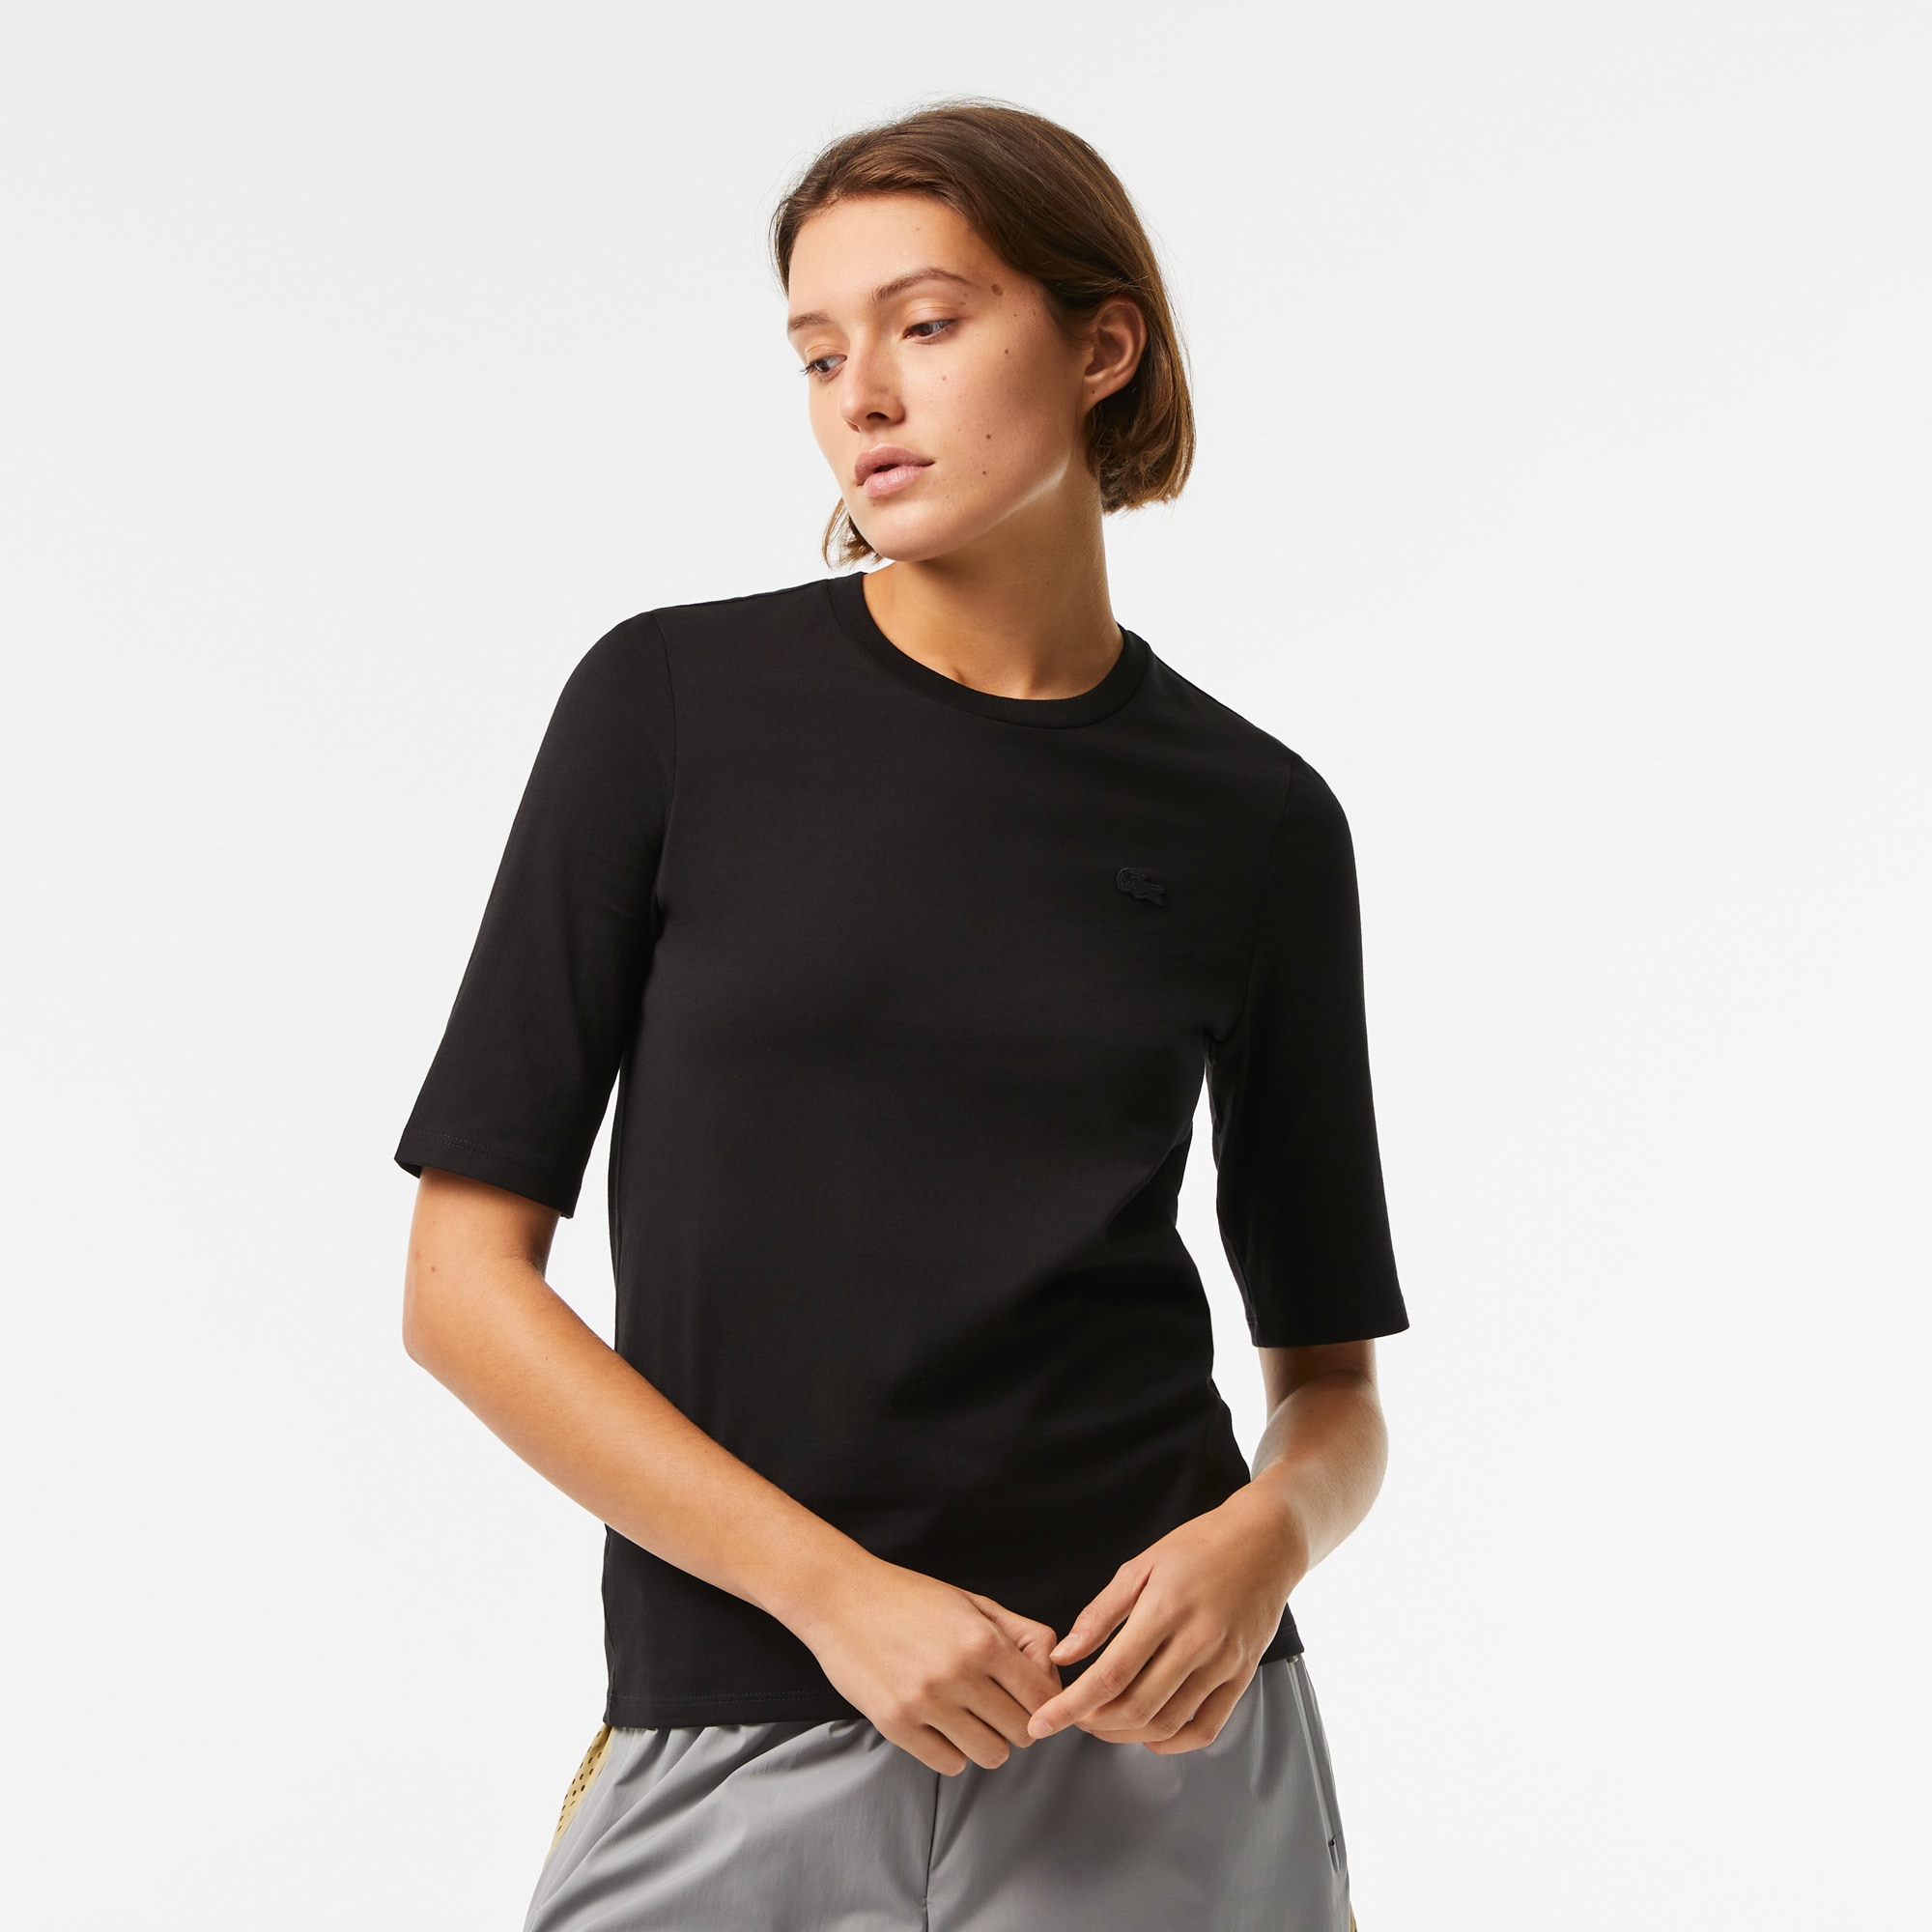 Lacoste Women’s Crew Neck Cotton T-shirt Size 6 Black